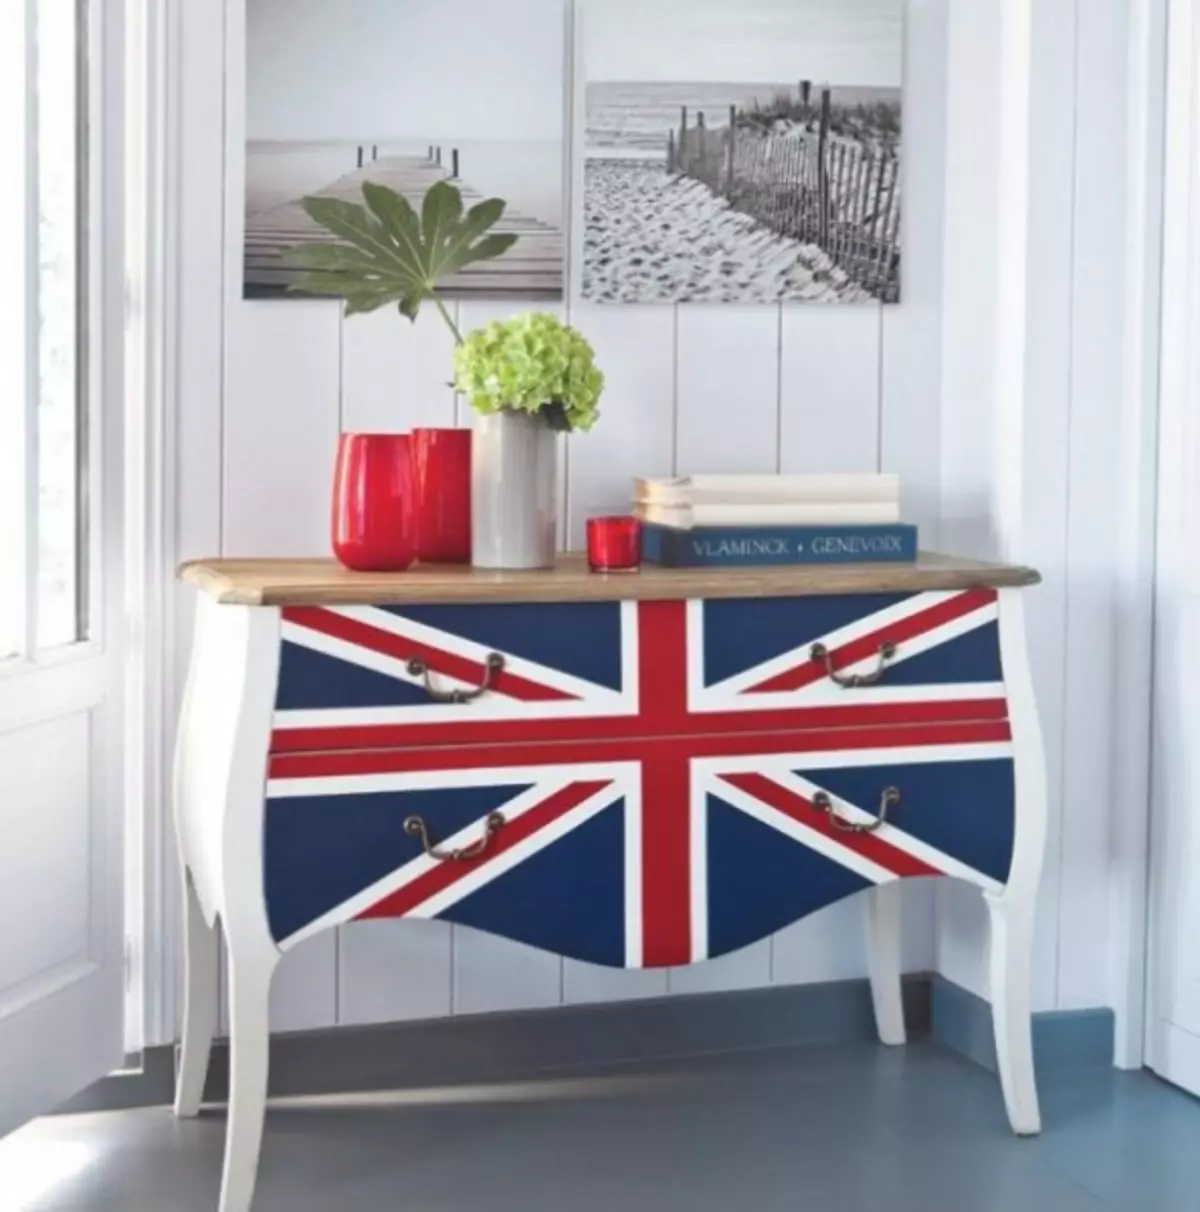 Մոտեցեք Լոնդոնին. Բրիտանական դրոշը ինտերիերում (Union Jack - 80 լուսանկար)